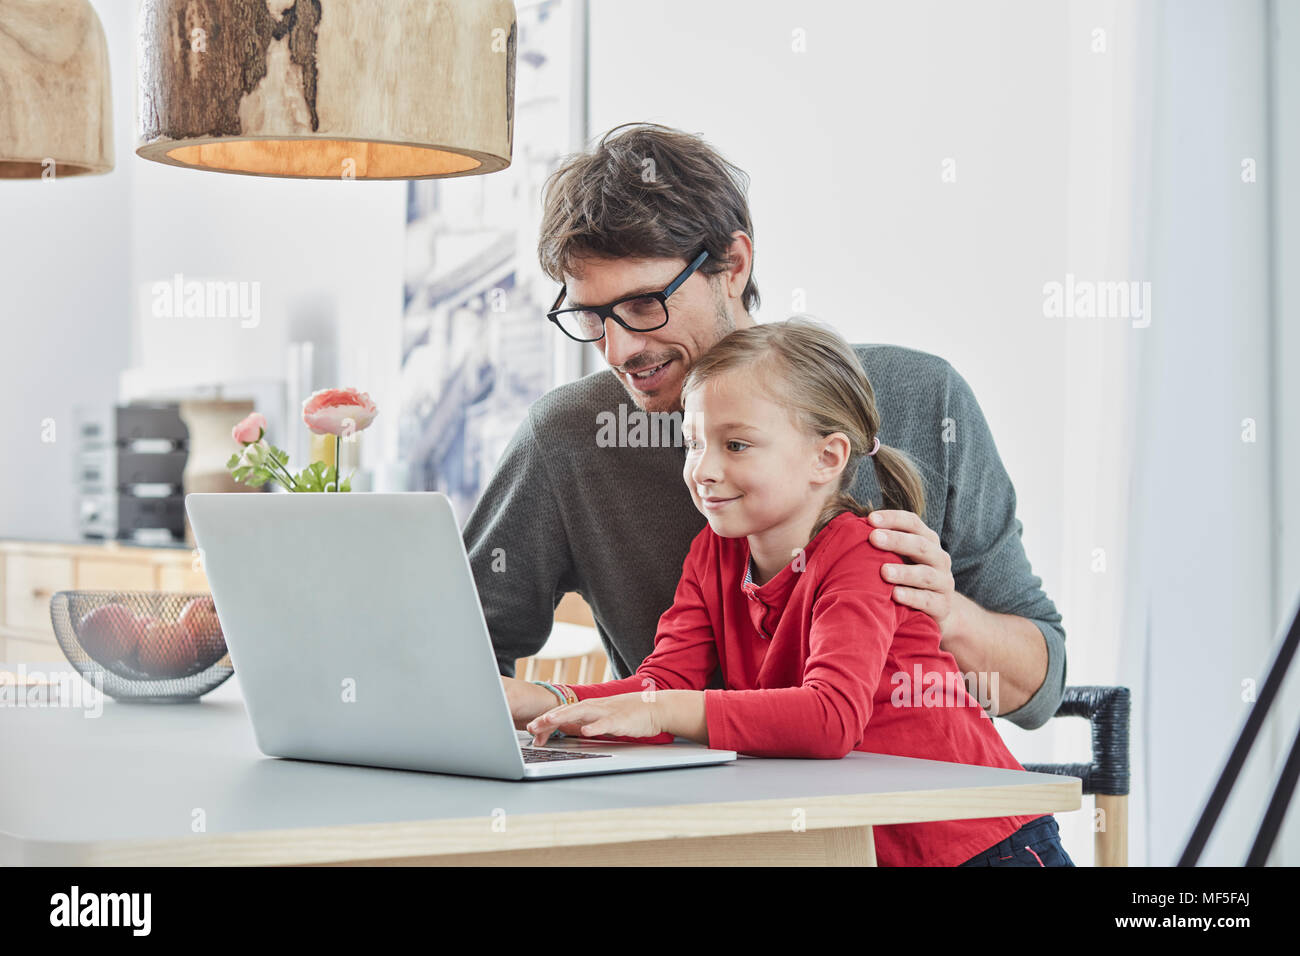 Smiling père et fille à l'aide de l'ordinateur portable sur le tableau à la maison Banque D'Images